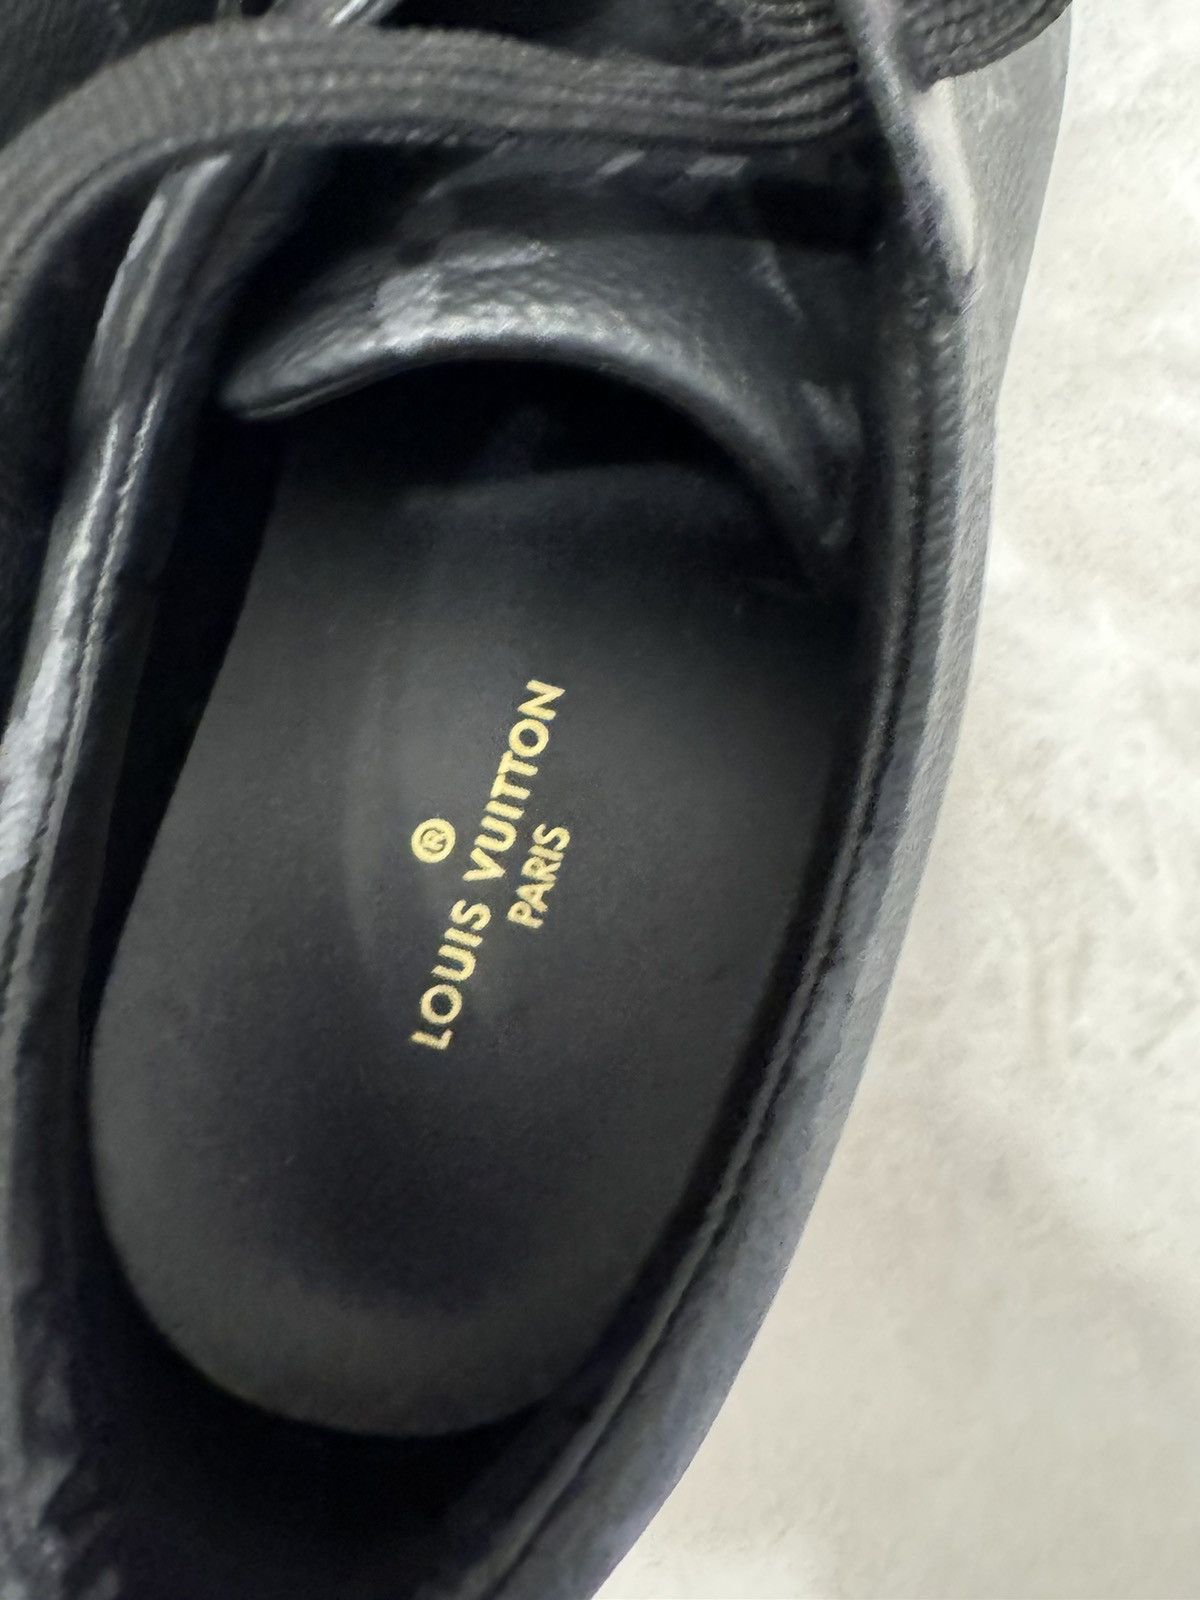 Louis Vuitton Louis Vuitton sneaker Size US 9 / EU 42 - 7 Thumbnail